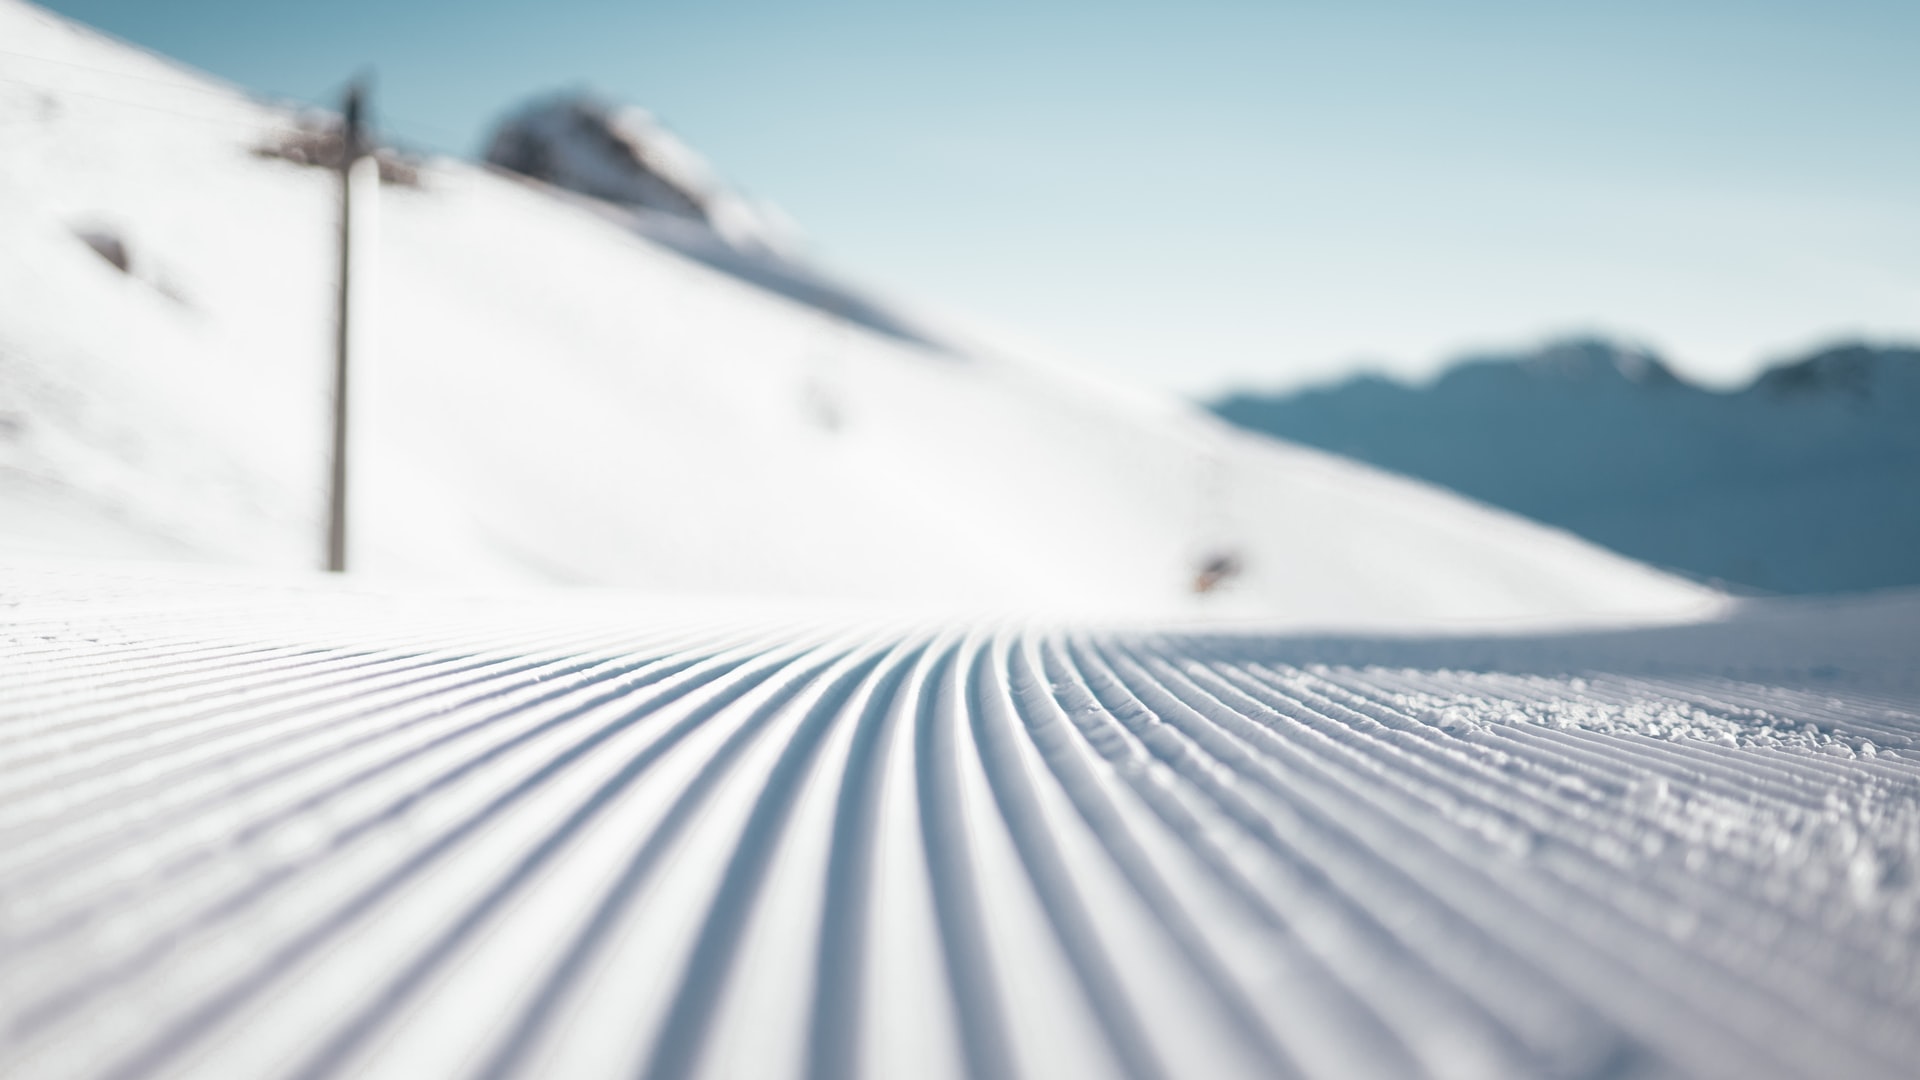 freshly groomed ski slope piste zoom background